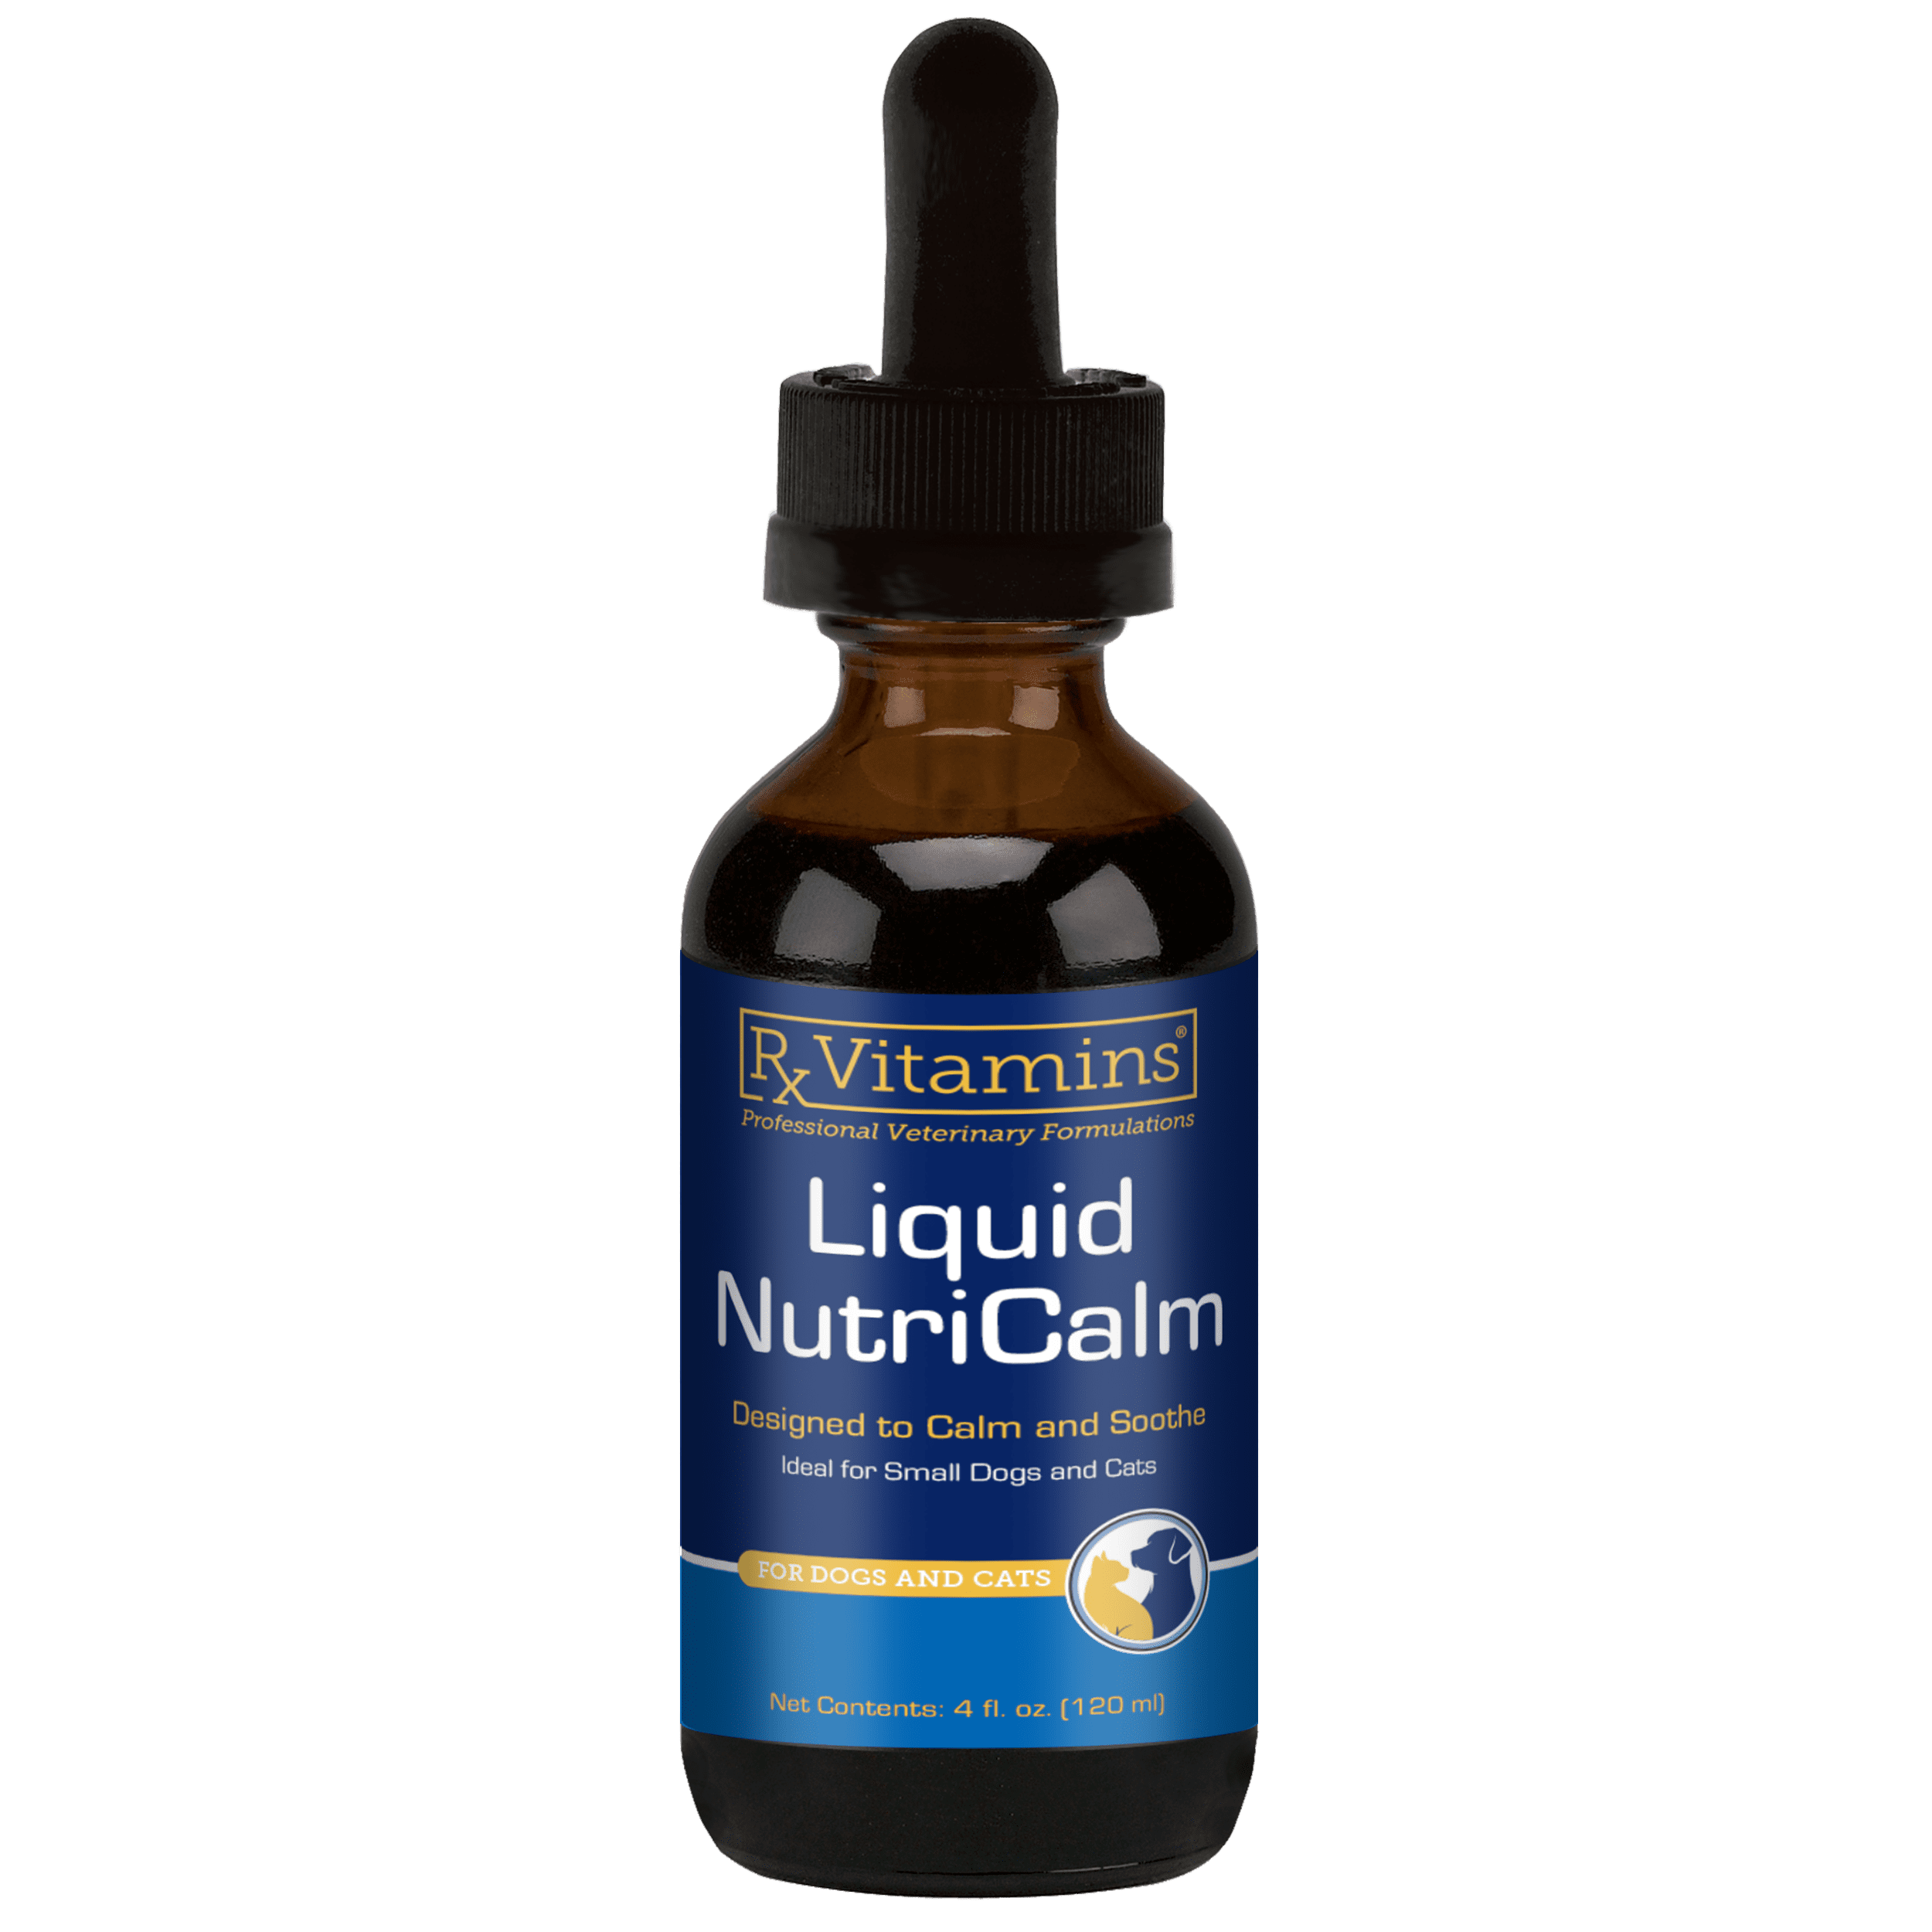 Liquid Nutricalm